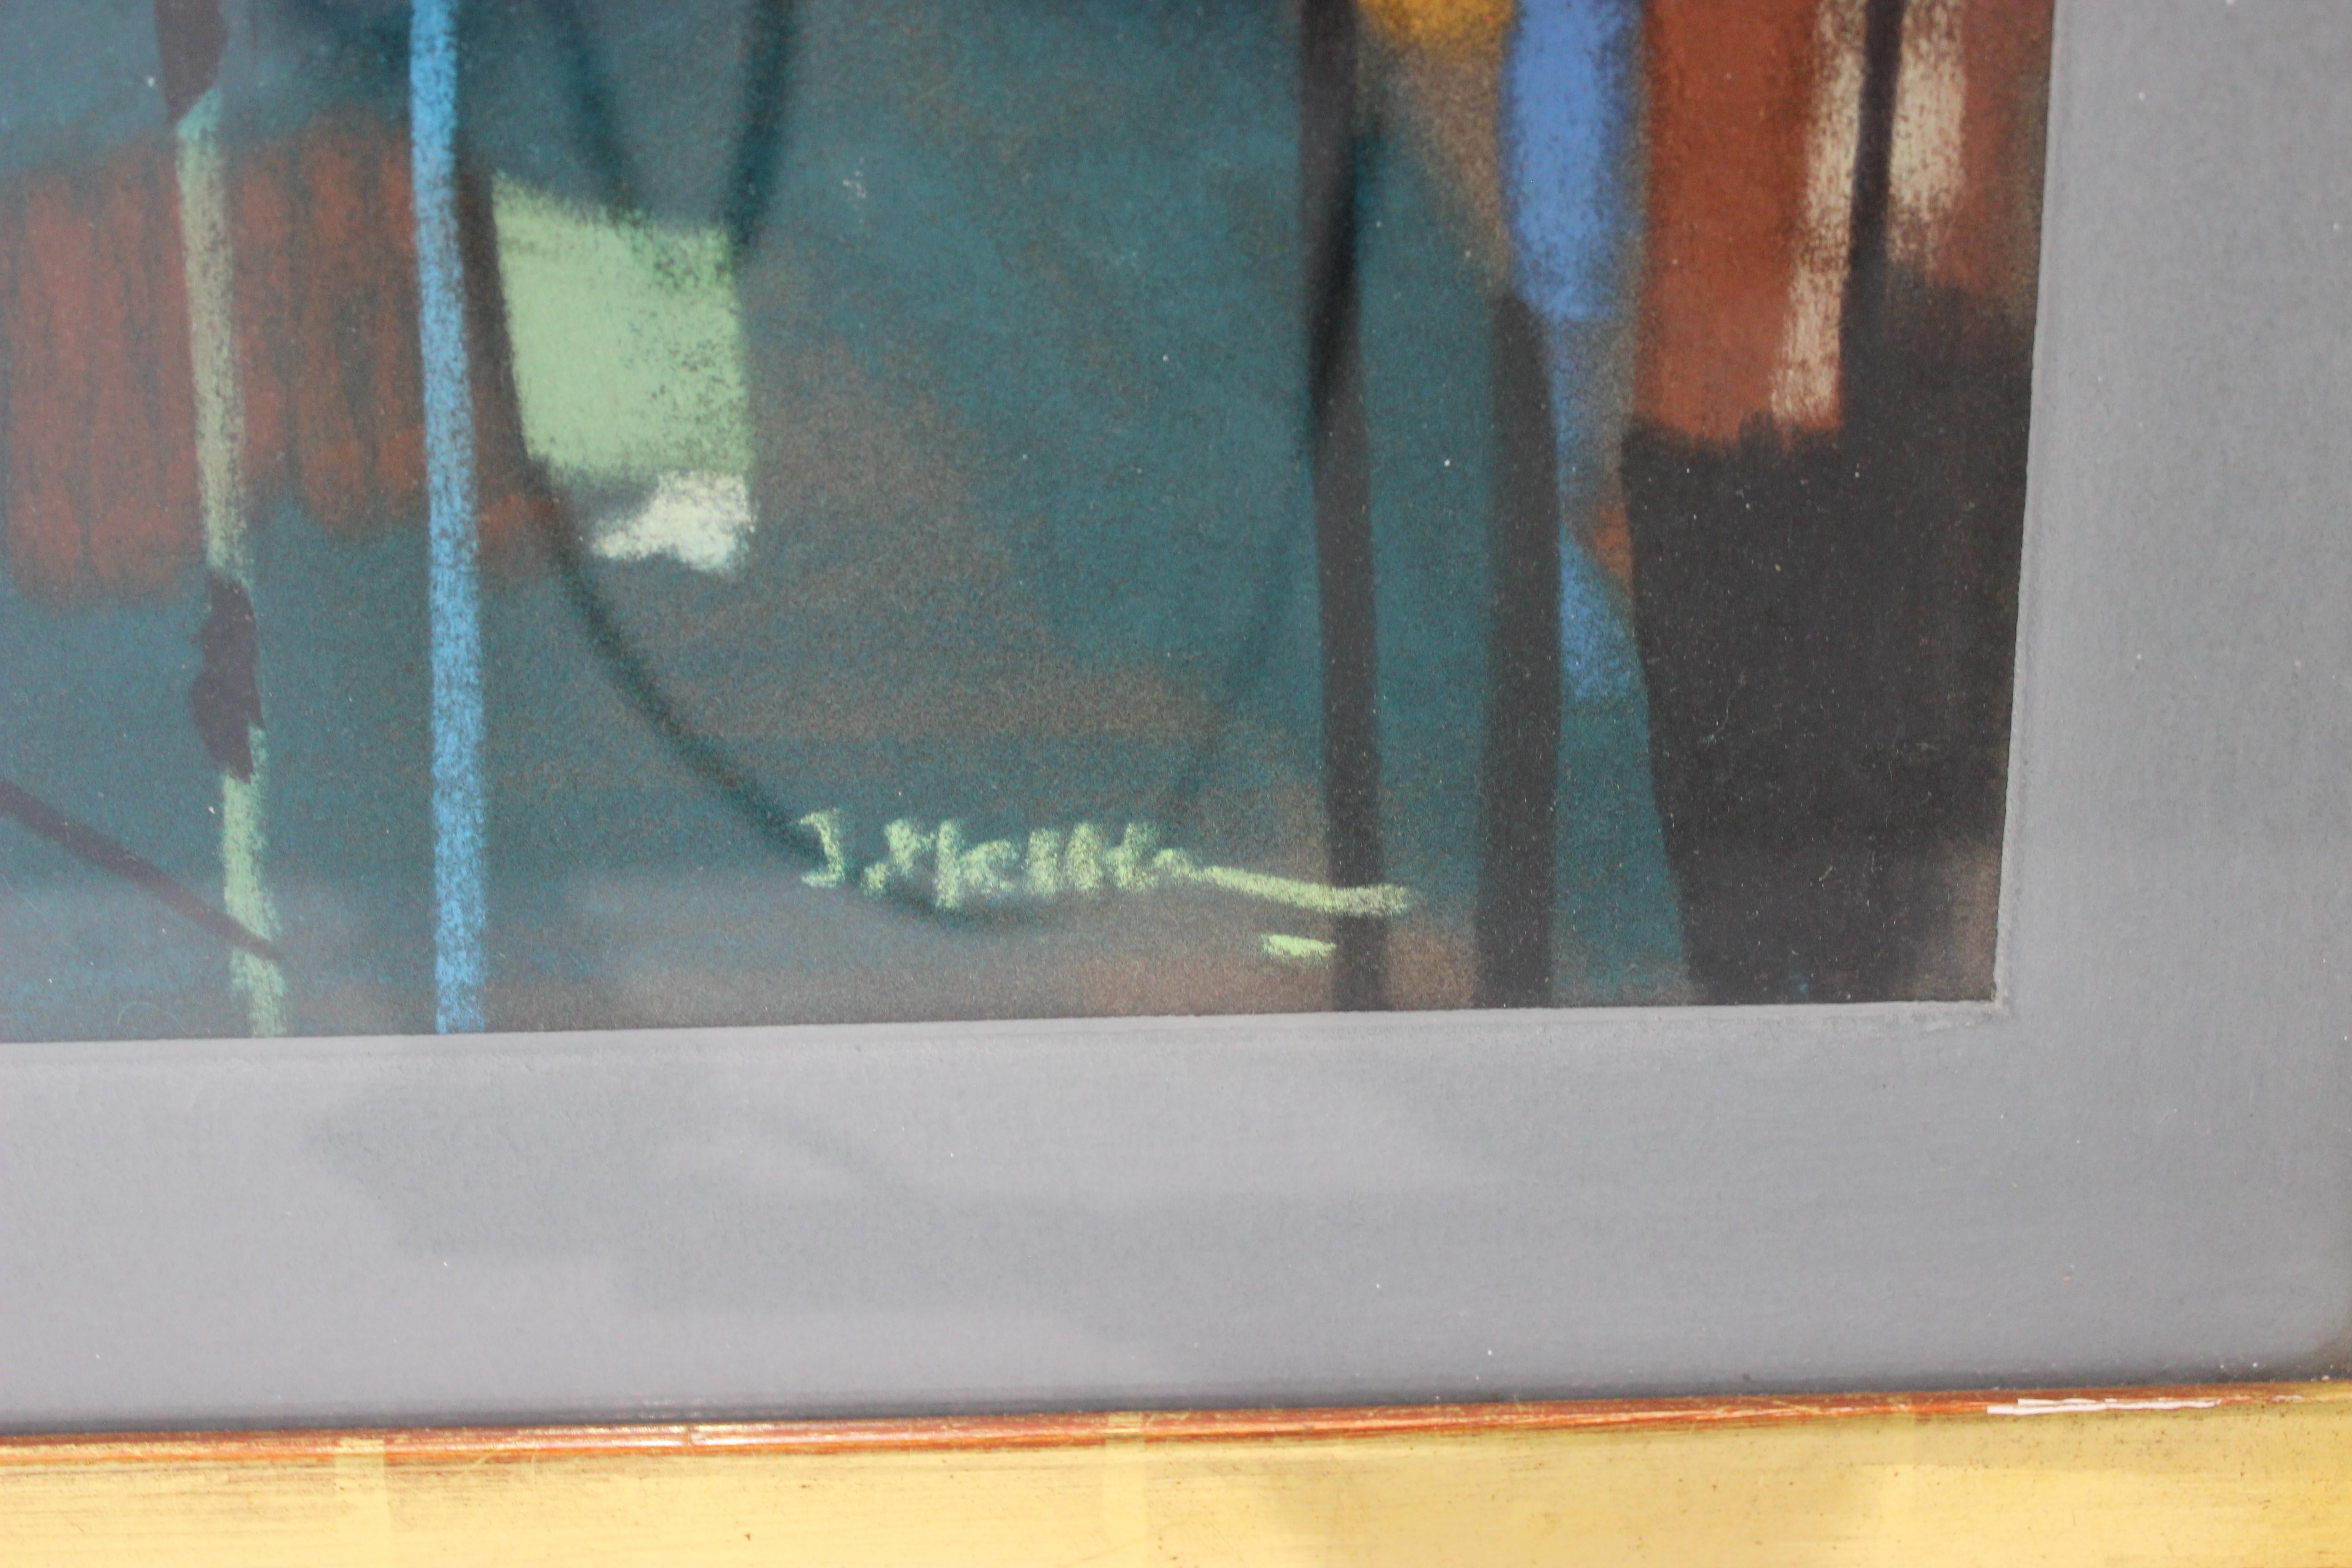 Abstraktes mehrfarbiges Mischtechnik-Gemälde Rot-Gold-Schwarz, Ende 20. Jahrhundert, aus einem Nachlass in Palm Beach.

Die Rückseite zeigt, dass diese ursprünglich von einem Besitzer in Stockholm ausgestellt wurde.

Die Malerei wird